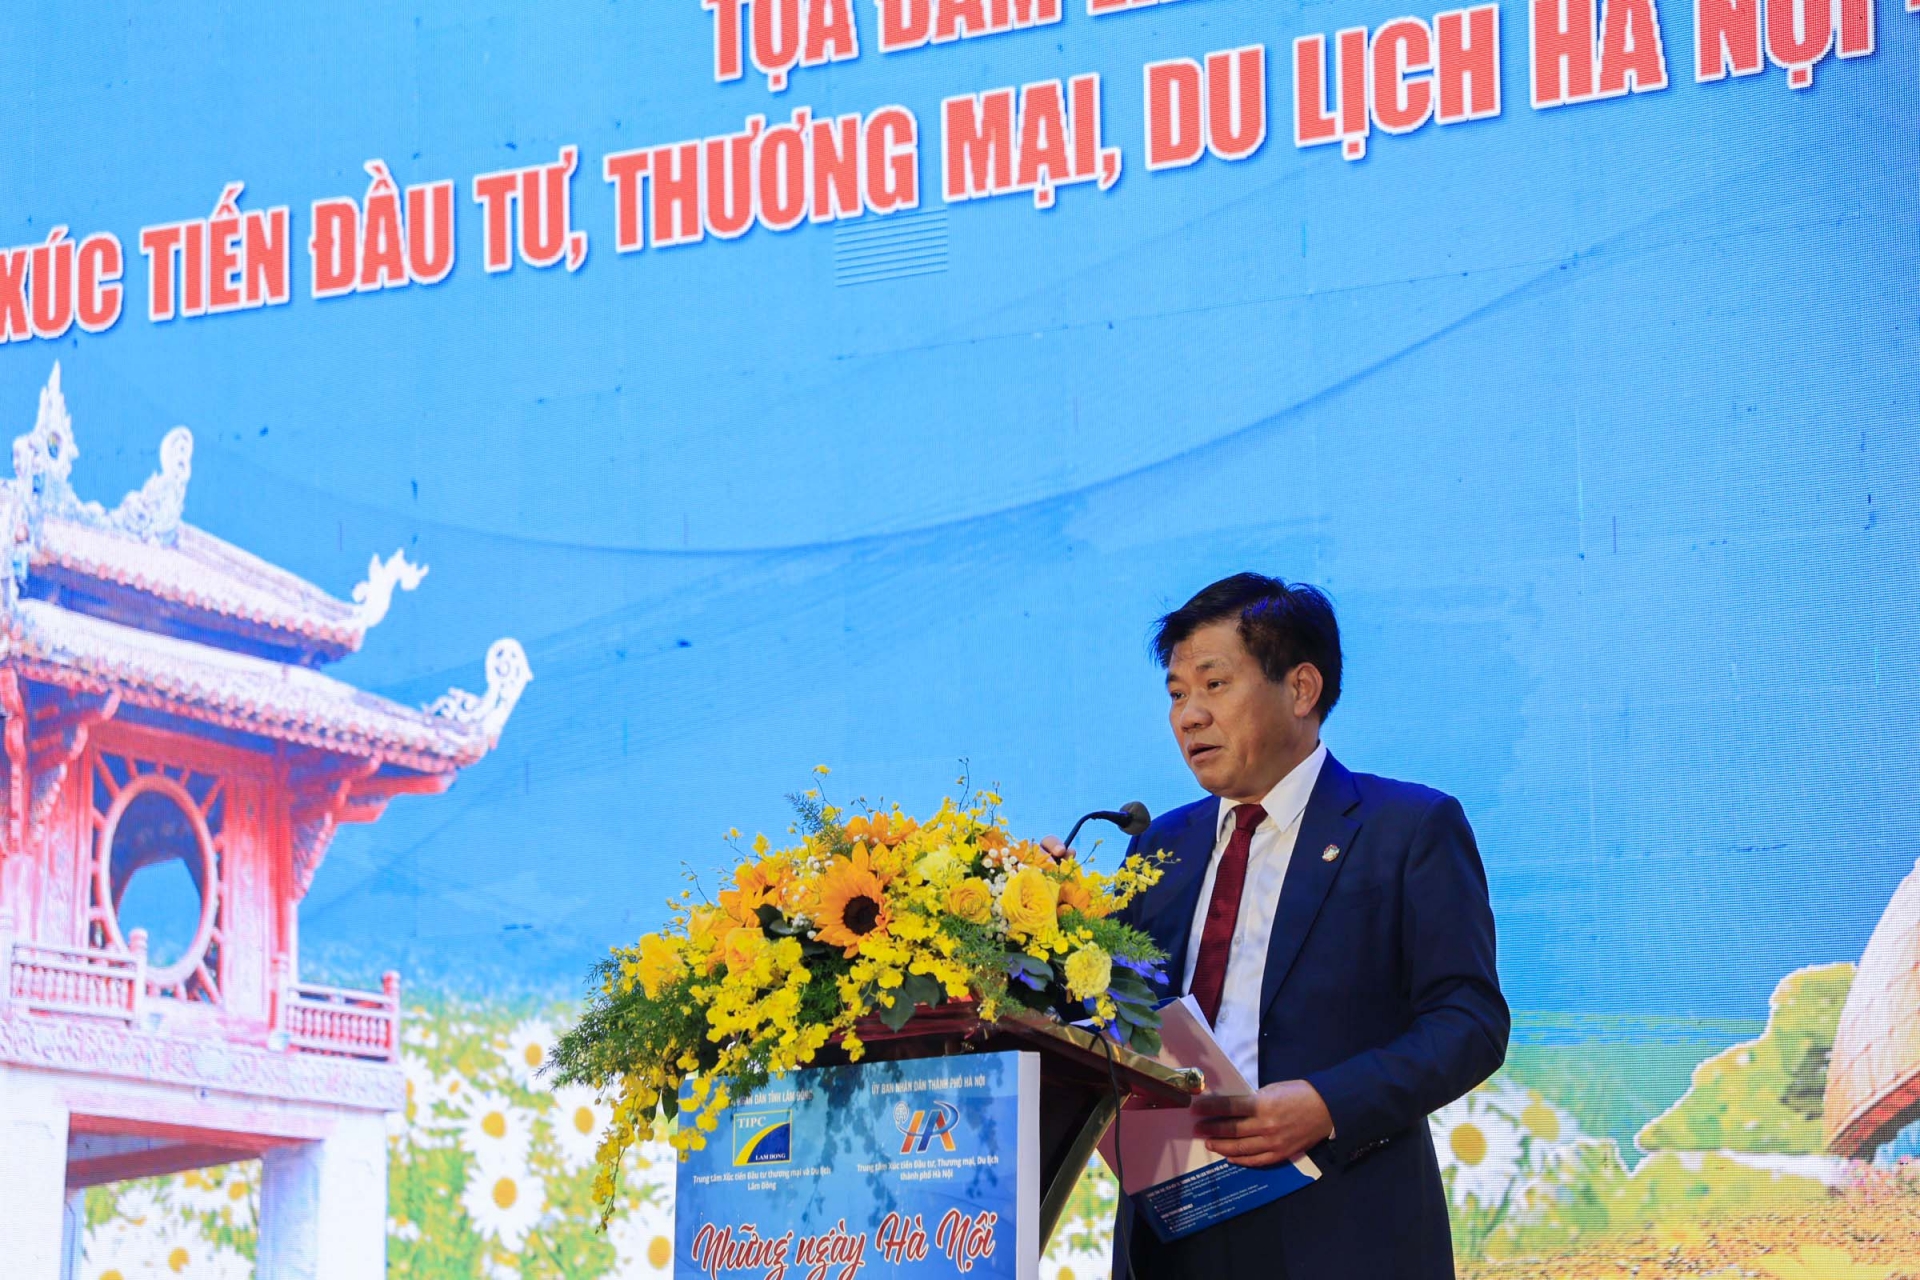 Ông Nguyễn Văn Sơn – Phó Chủ tịch UBND thành phố Đà Lạt giới thiệu các chương trình trong Chuỗi hoạt động kỷ niệm 130 năm Đà Lạt hình thành và phát triển